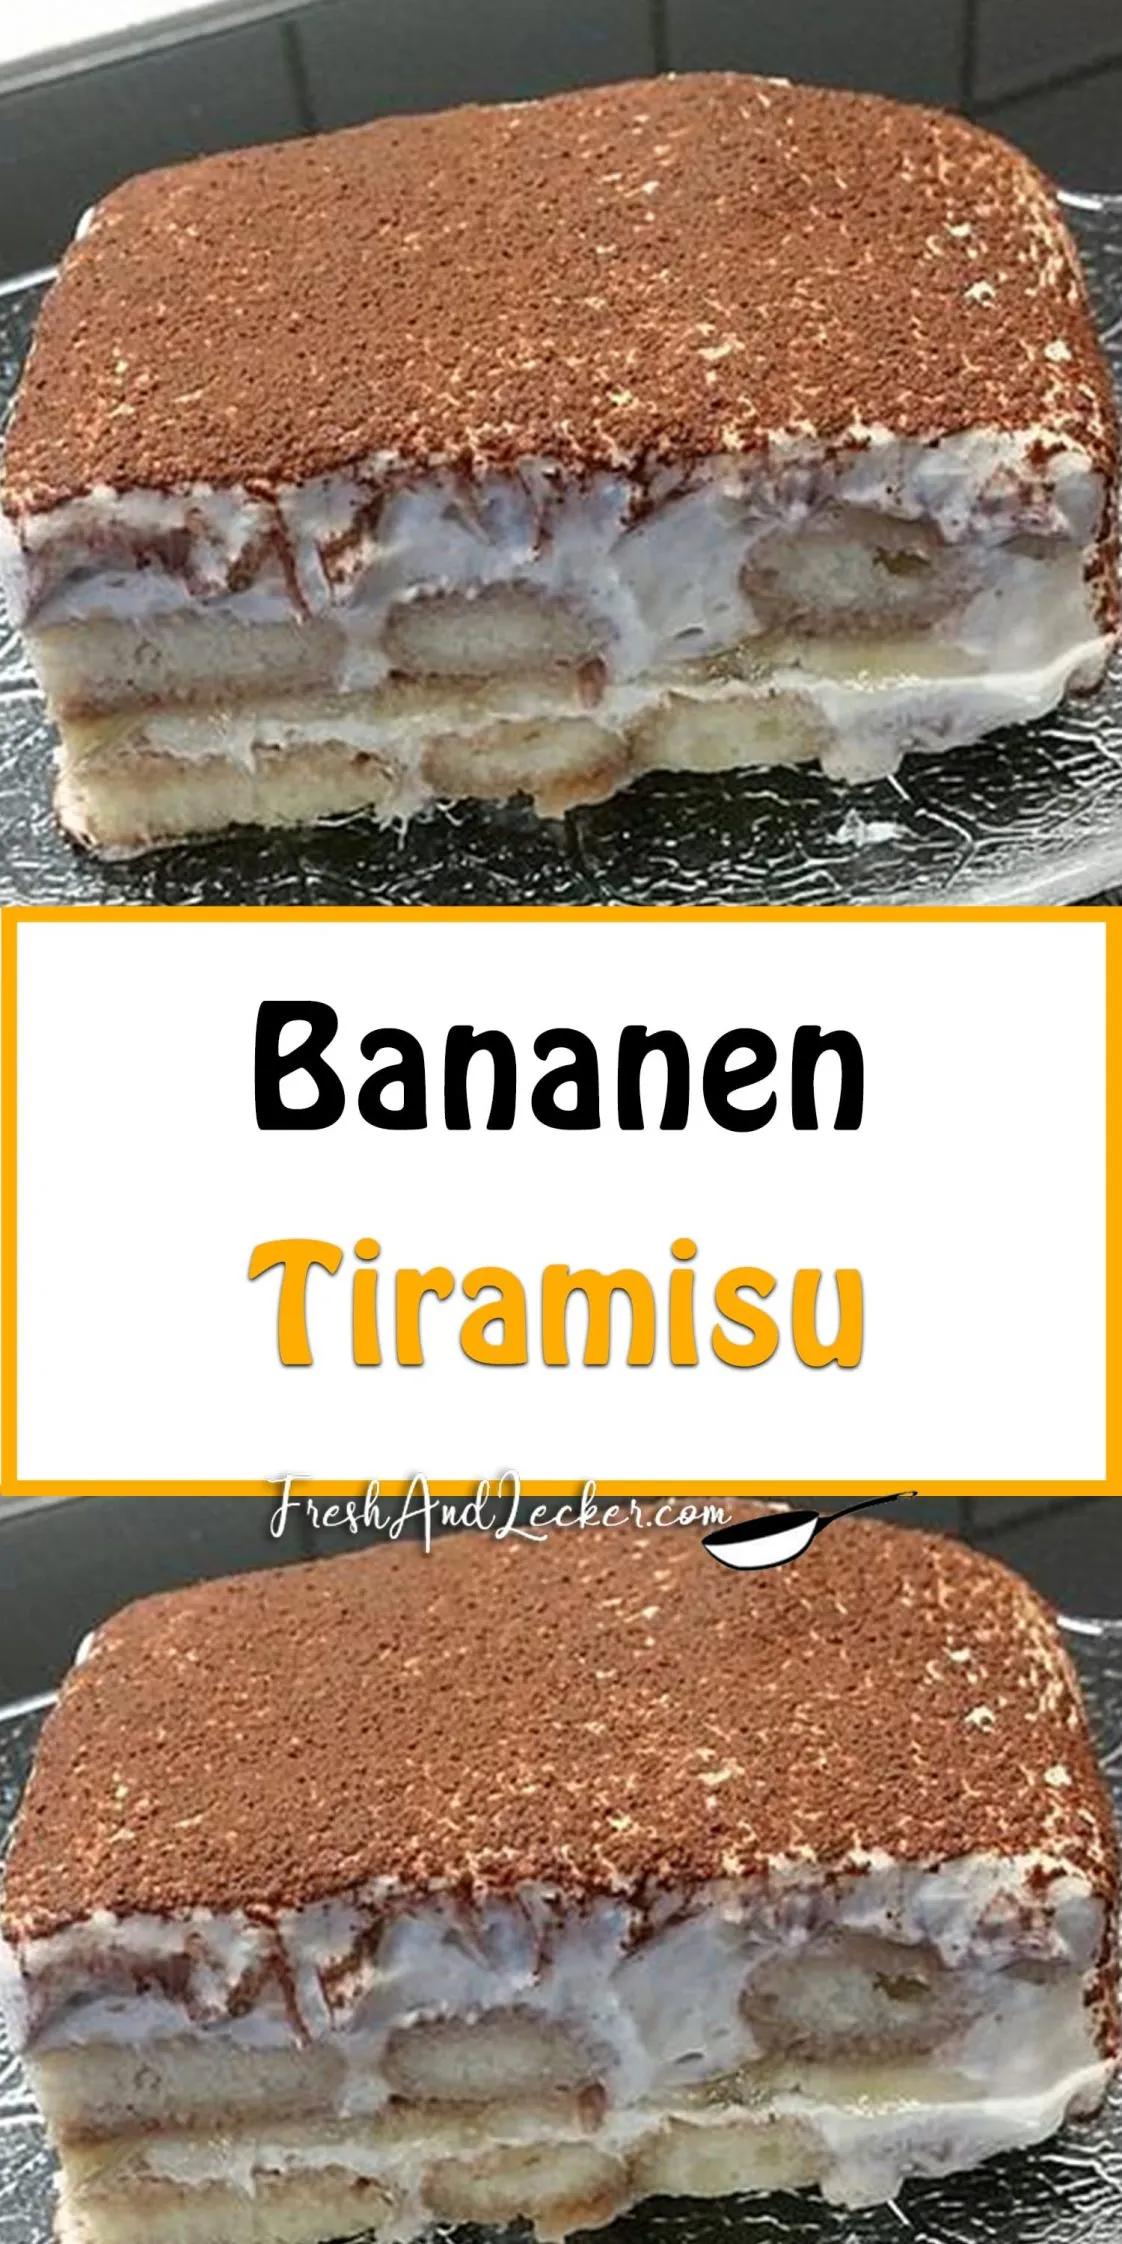 Bananen-Tiramisu - Fresh Lecker